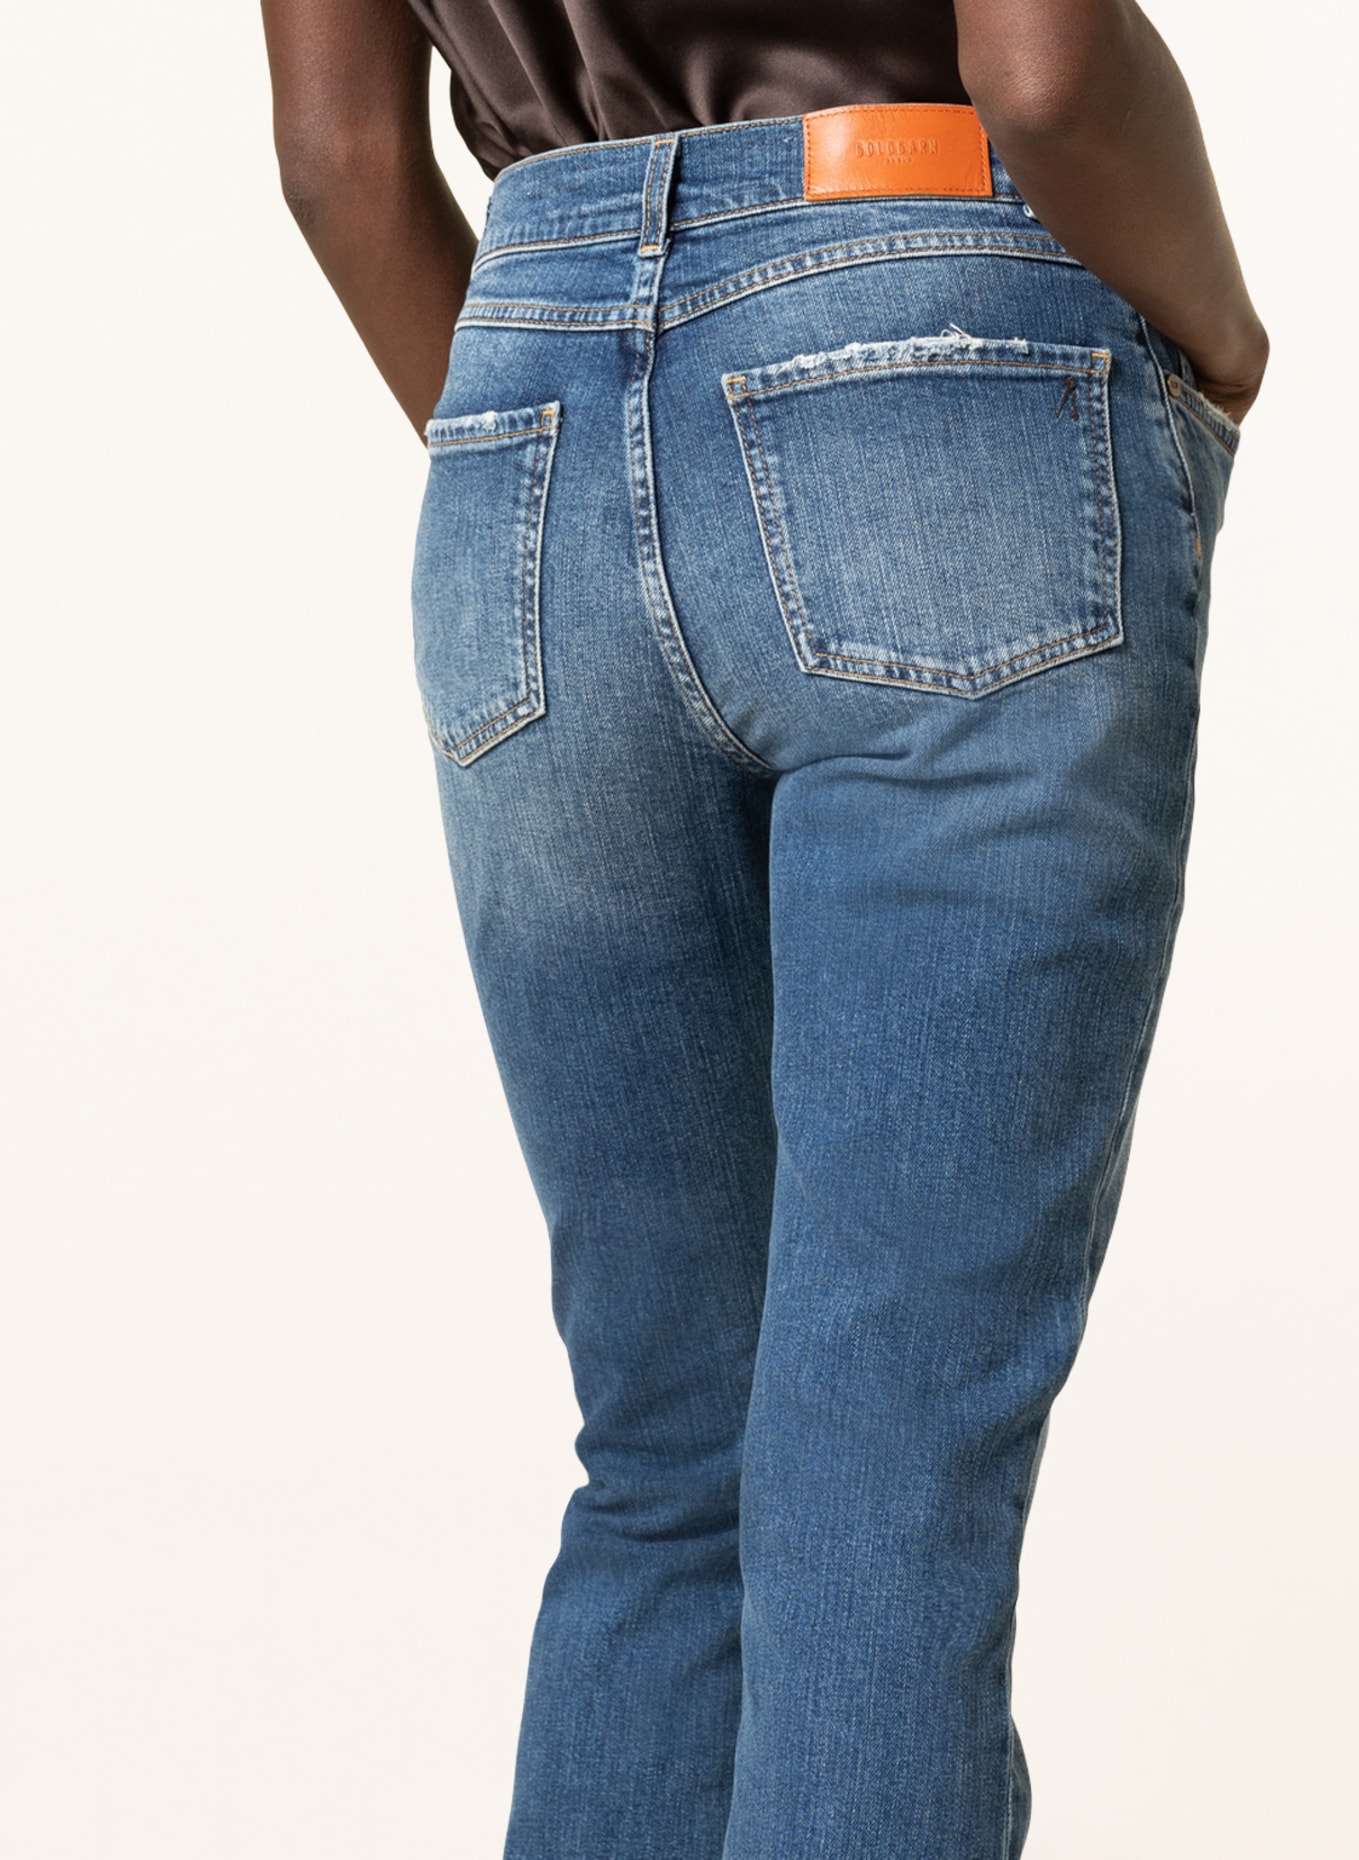 GOLDGARN DENIM Bootcut jeans LINDENHOF, Color: 1090 MID BLUE (Image 5)